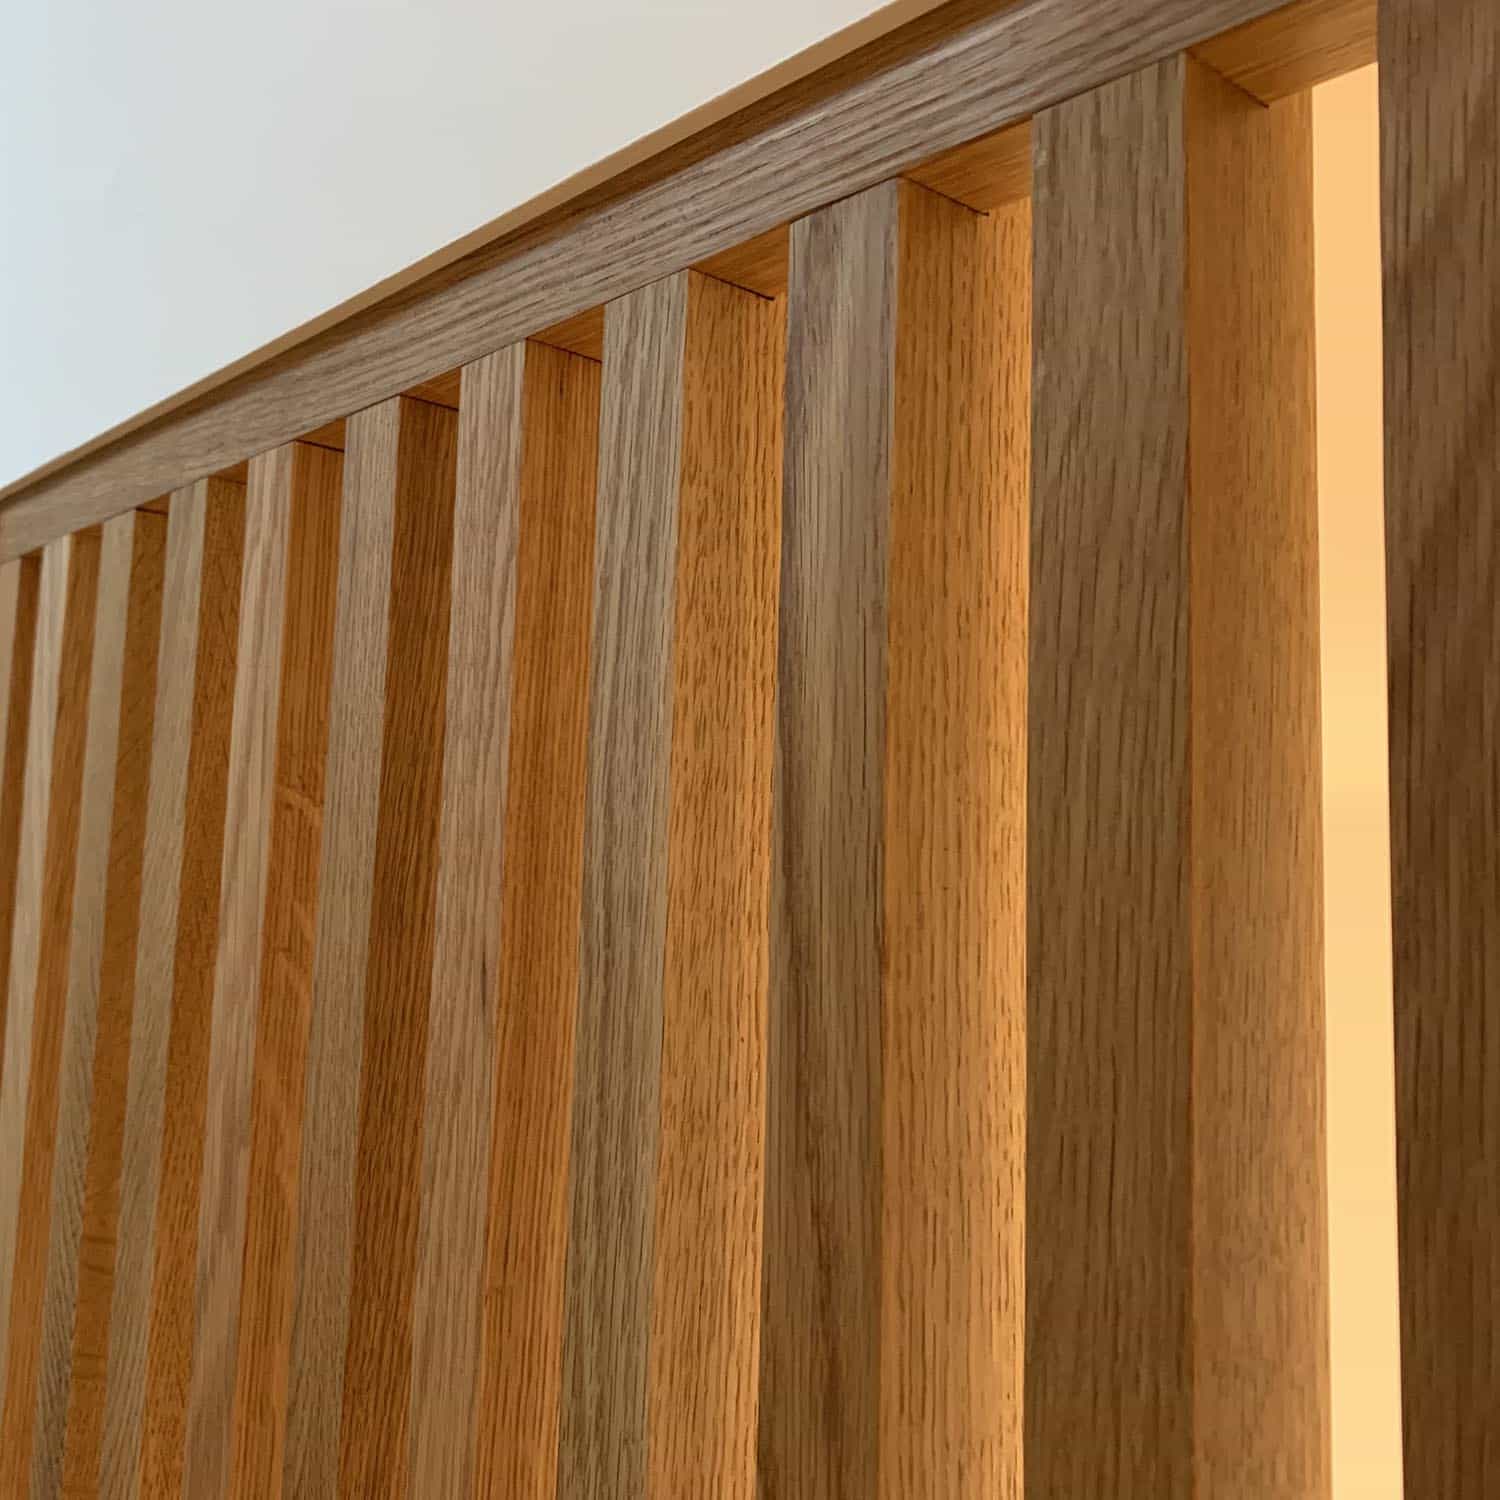 Wood Slat Wall Design